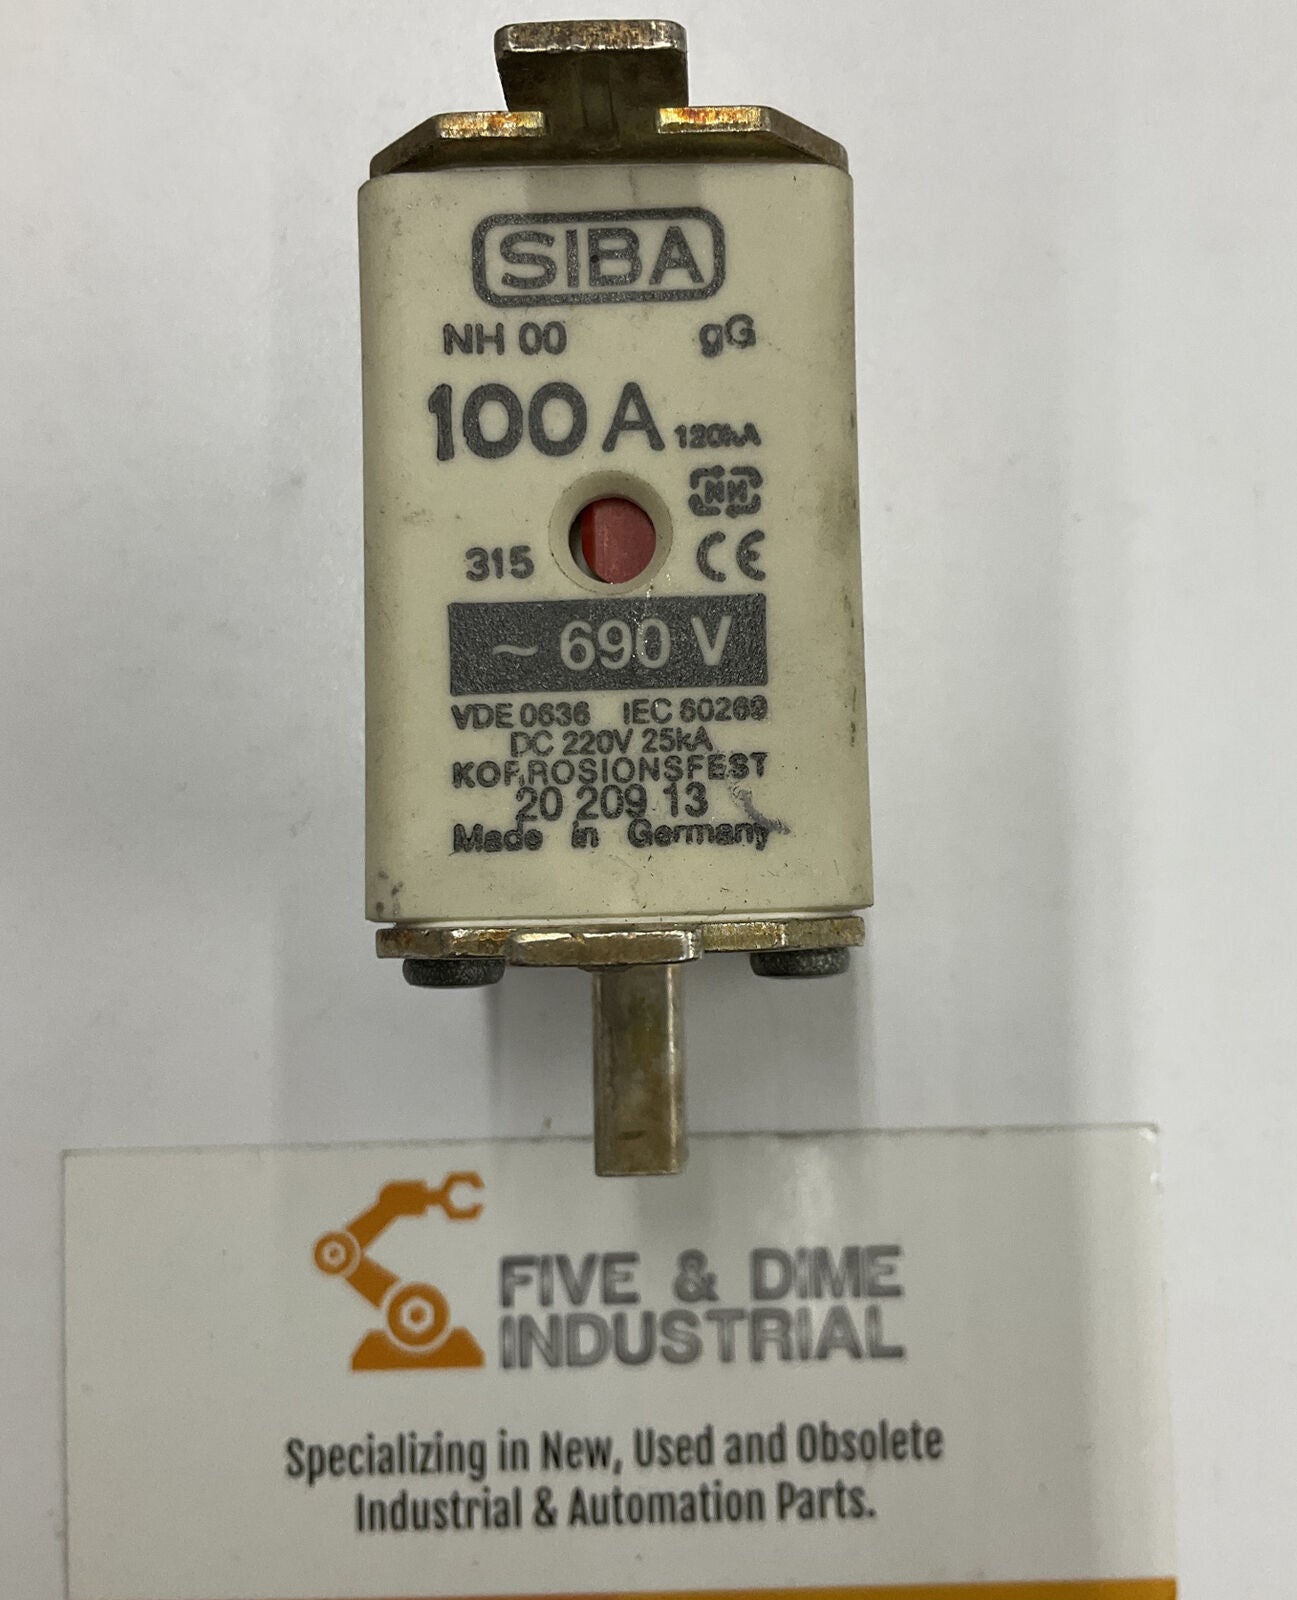 SIBA NH 00 VDE 0636 IEC 80269 100A 690V (GR168) - 0